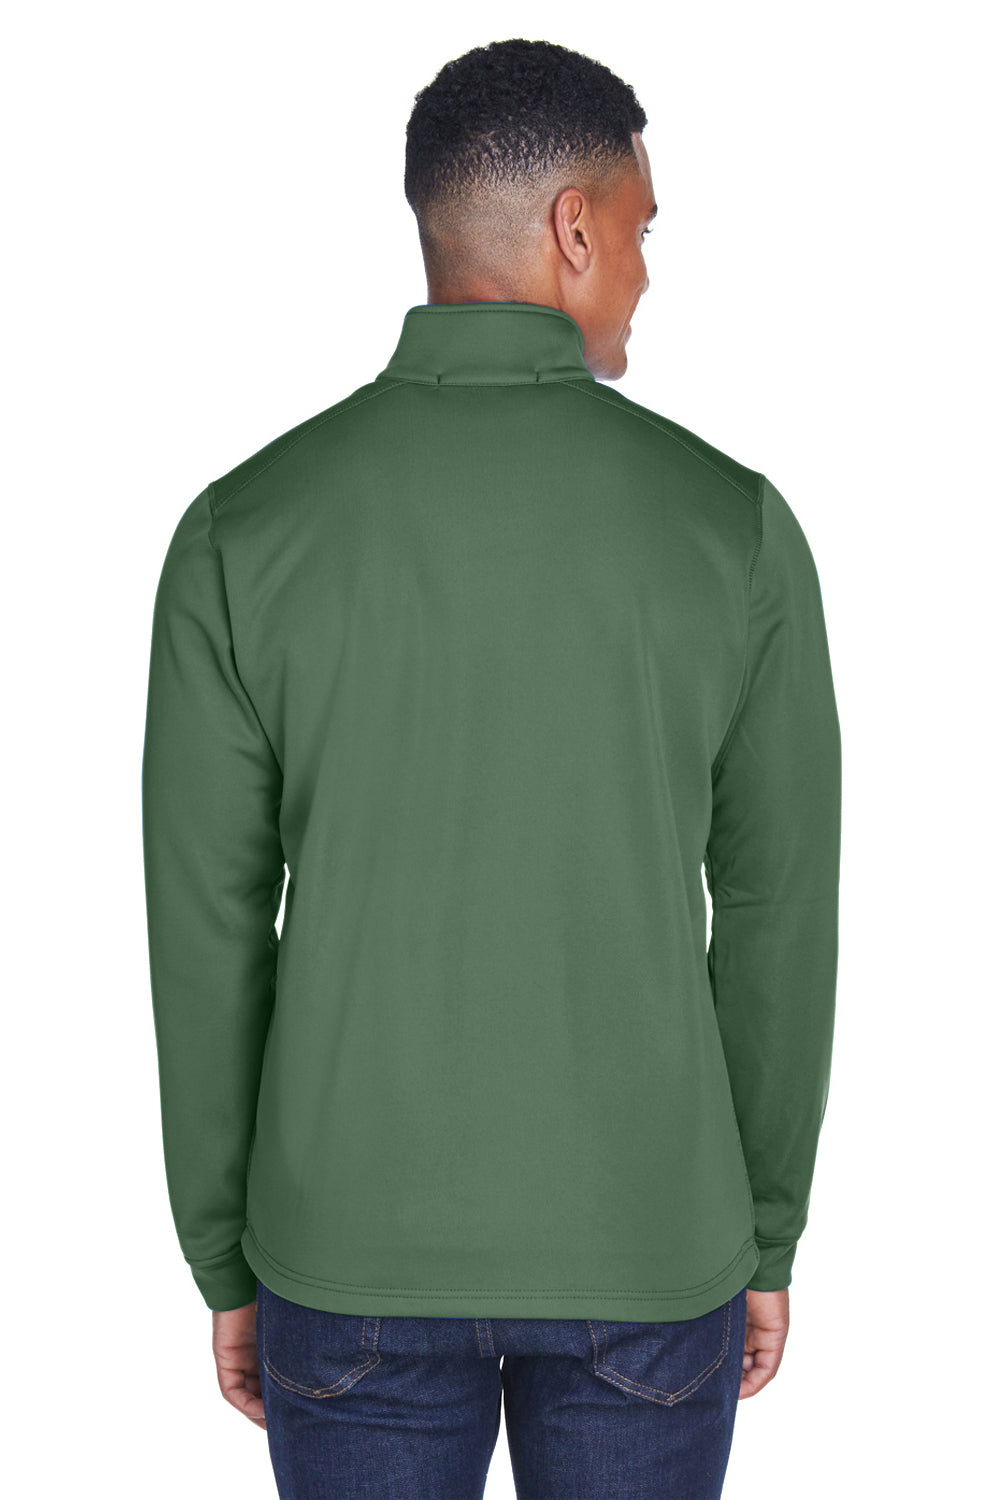 Devon & Jones DG796 Mens Newbury Fleece Full Zip Sweatshirt Forest Green Back